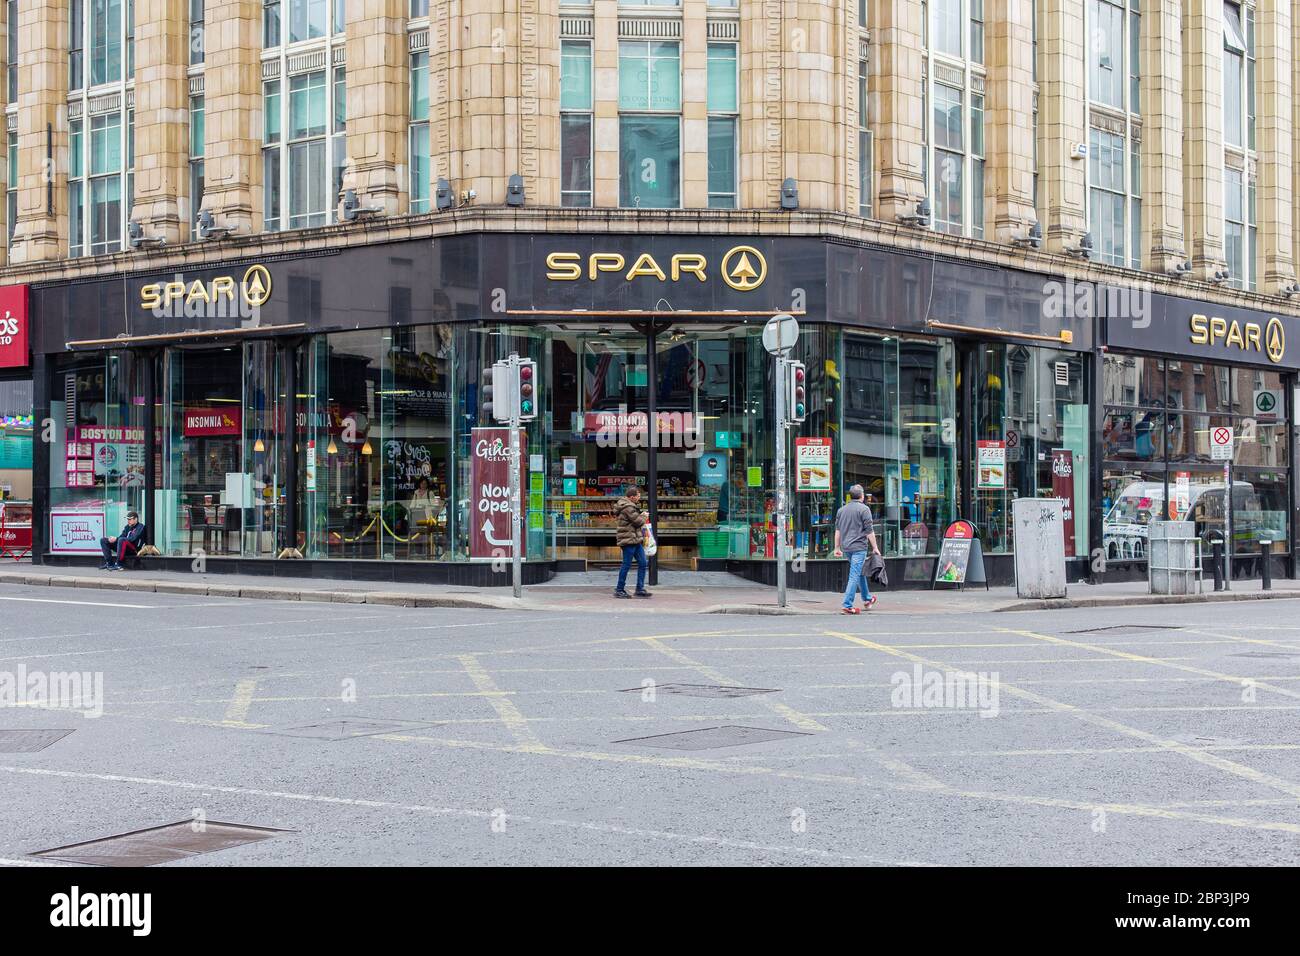 Dublin, Irland. Mai 2020. Spar Store in einer ruhigen Dame Street, da die Stadt aufgrund der Pandemiebeschränkungen von Covid-19 nur begrenzt zu Fuß und mit wenig Verkehr zu erreichen ist Stockfoto